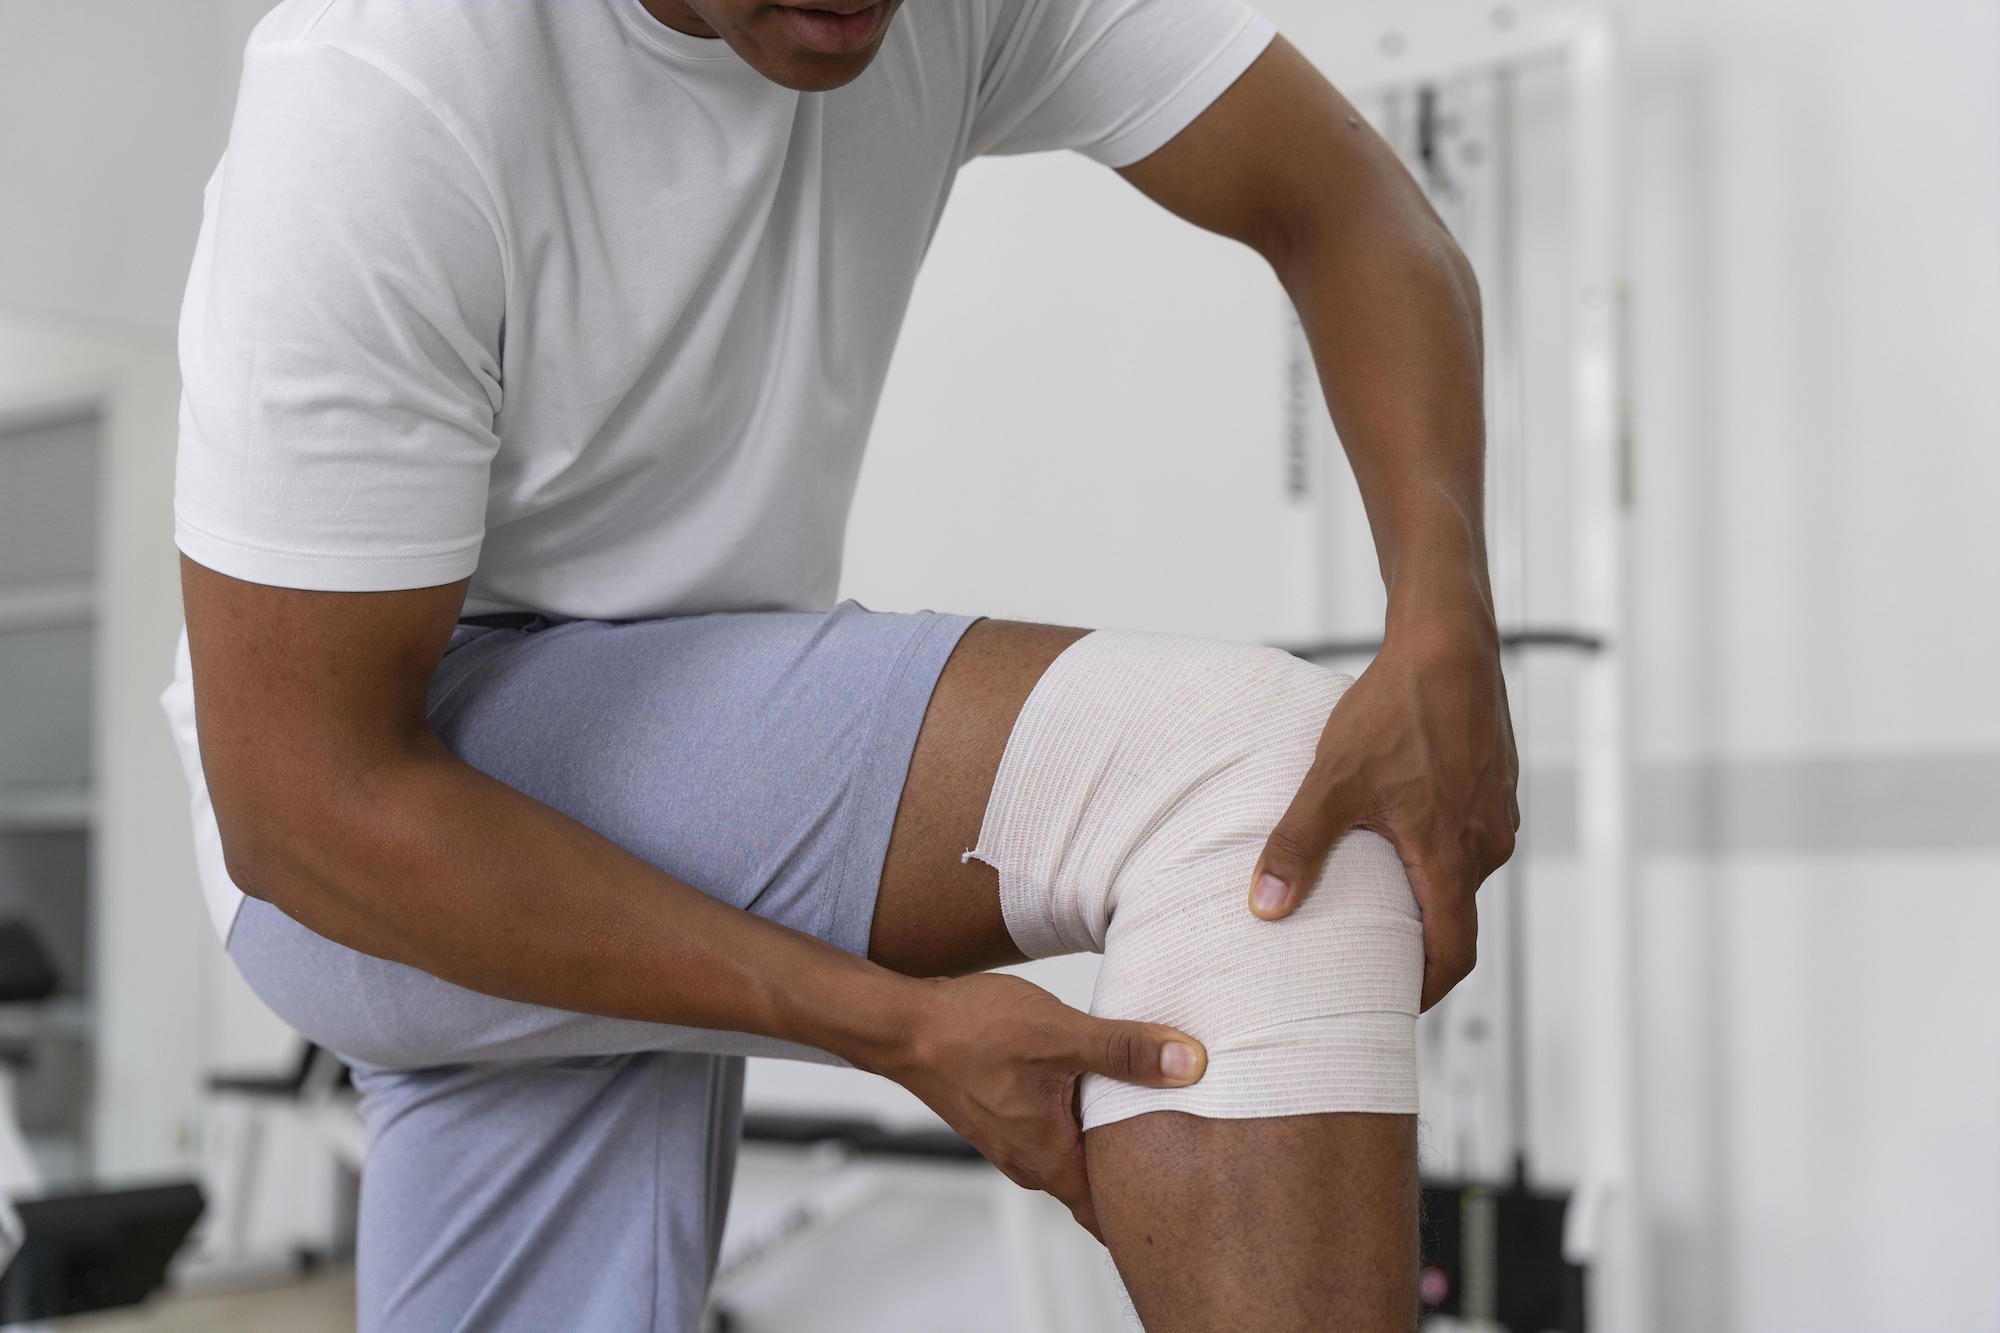 Homme avec bandage au genou - L'importance d'être accompagné par un coach sportif pour éviter les blessures en remise en forme